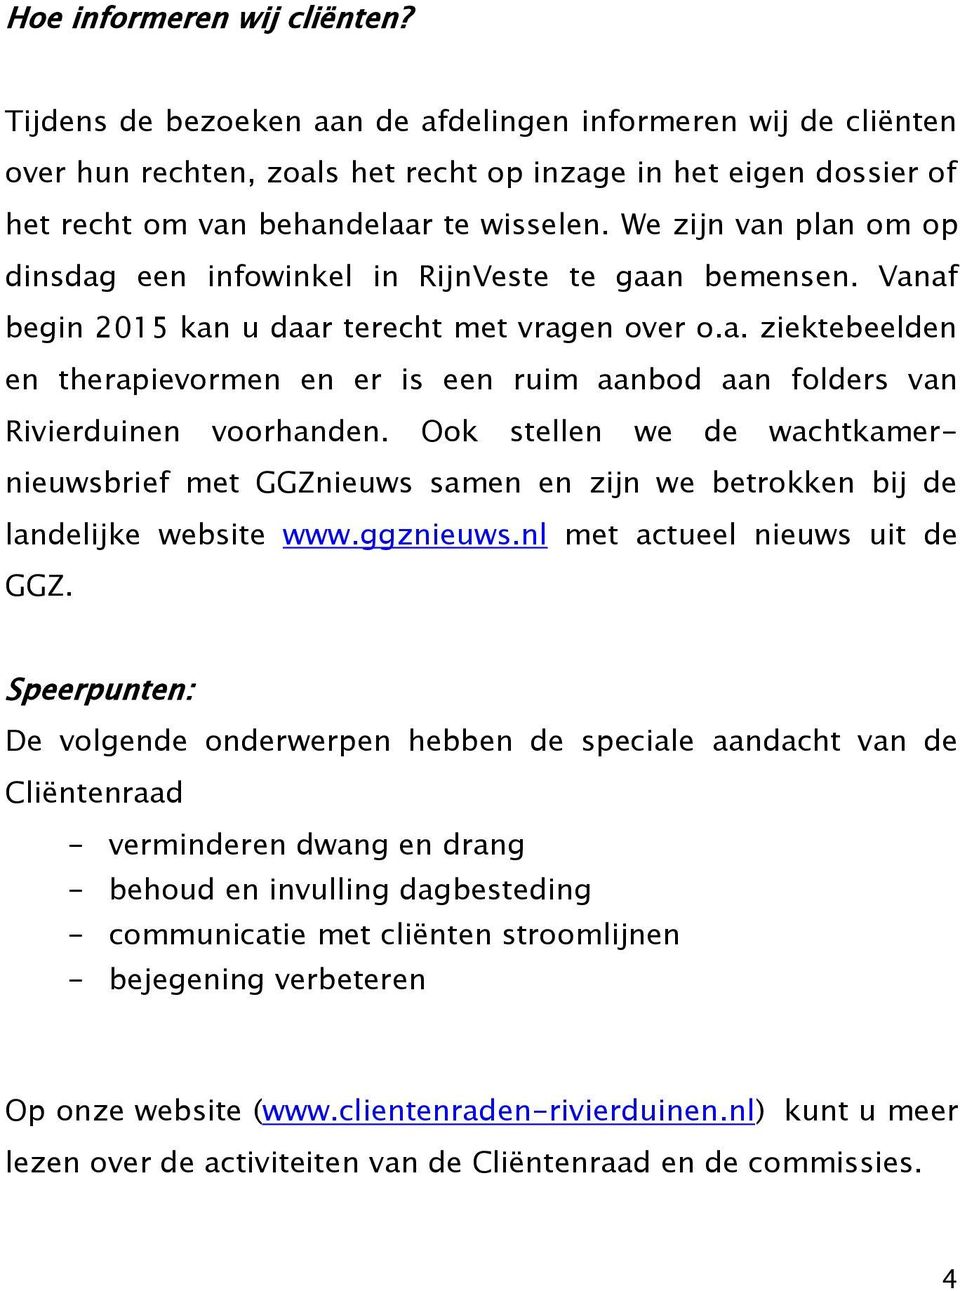 We zijn van plan om op dinsdag een infowinkel in RijnVeste te gaan bemensen. Vanaf begin 2015 kan u daar terecht met vragen over o.a. ziektebeelden en therapievormen en er is een ruim aanbod aan folders van Rivierduinen voorhanden.